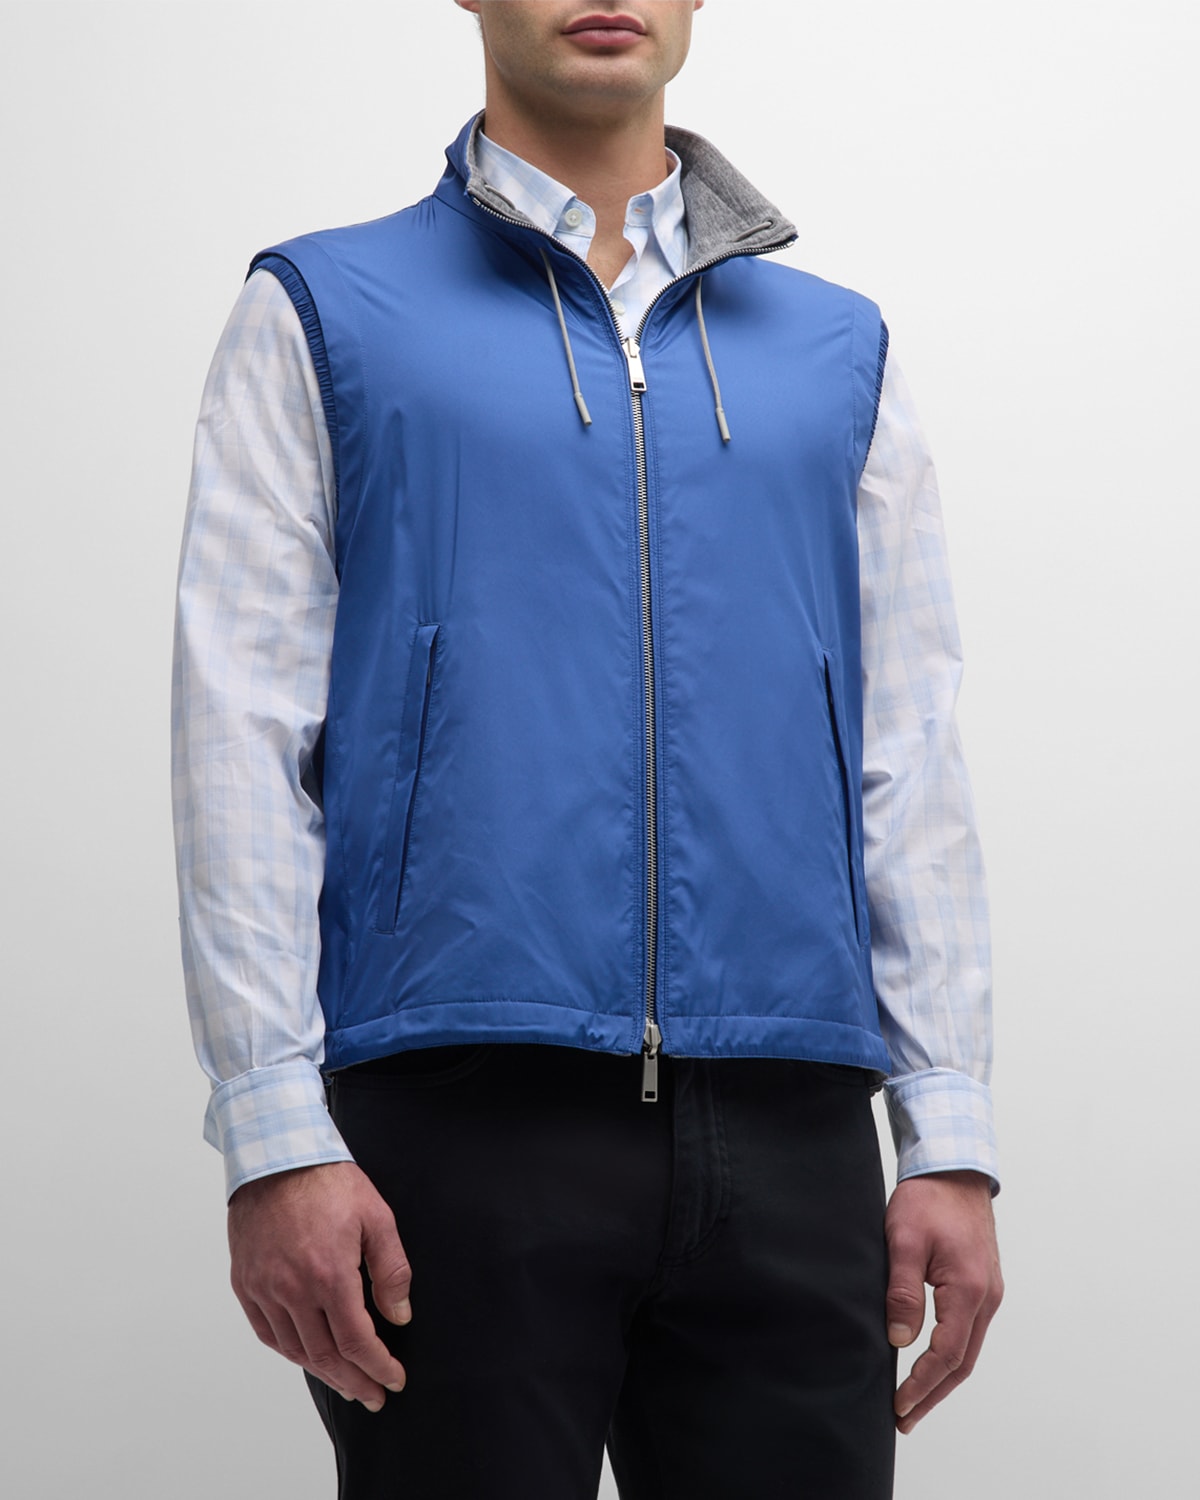 Zegna Men's Reversible Full-zip Vest In Navy Solid